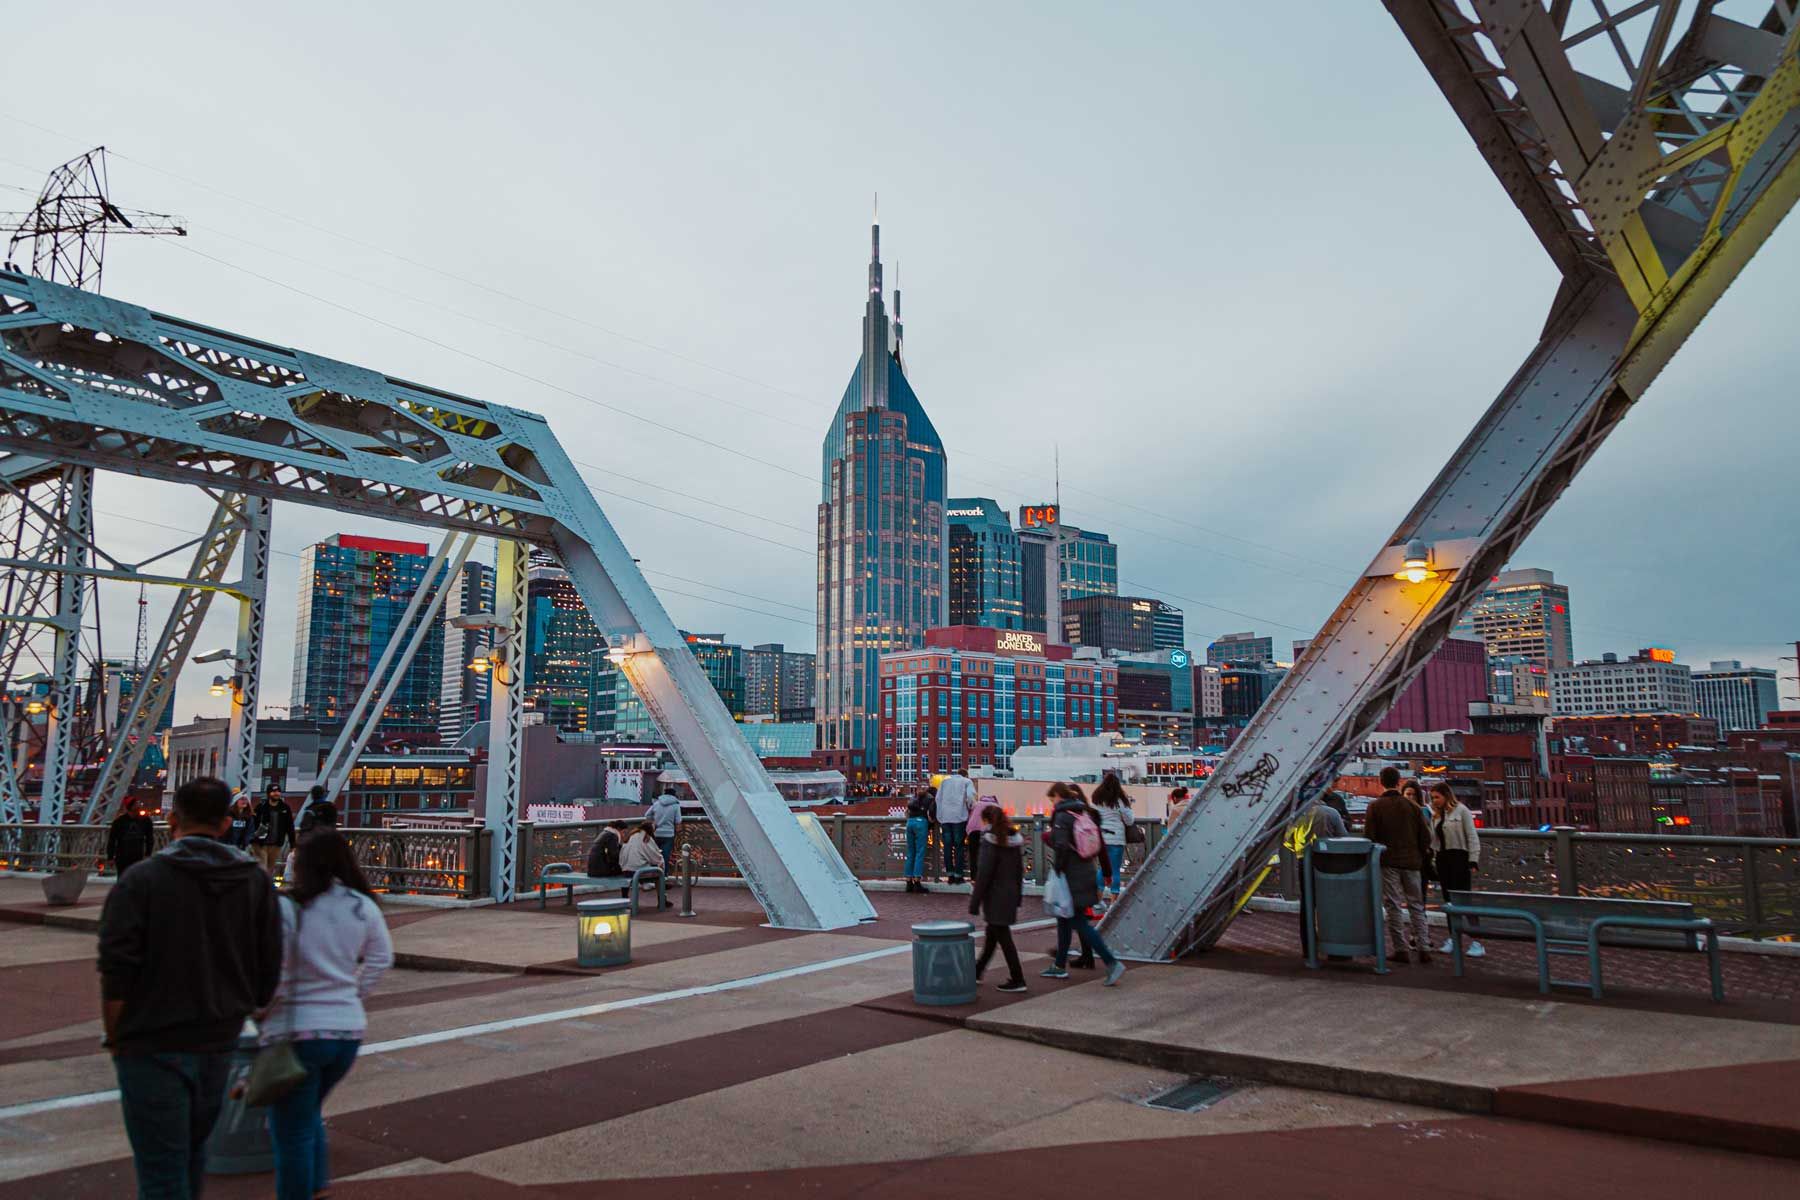 Scena iz Nashvillea s pješačkim mostom John Seigenthaler. Vanjske snimke gradskih scena u Nashvilleu u državi Tennessee tijekom zime.